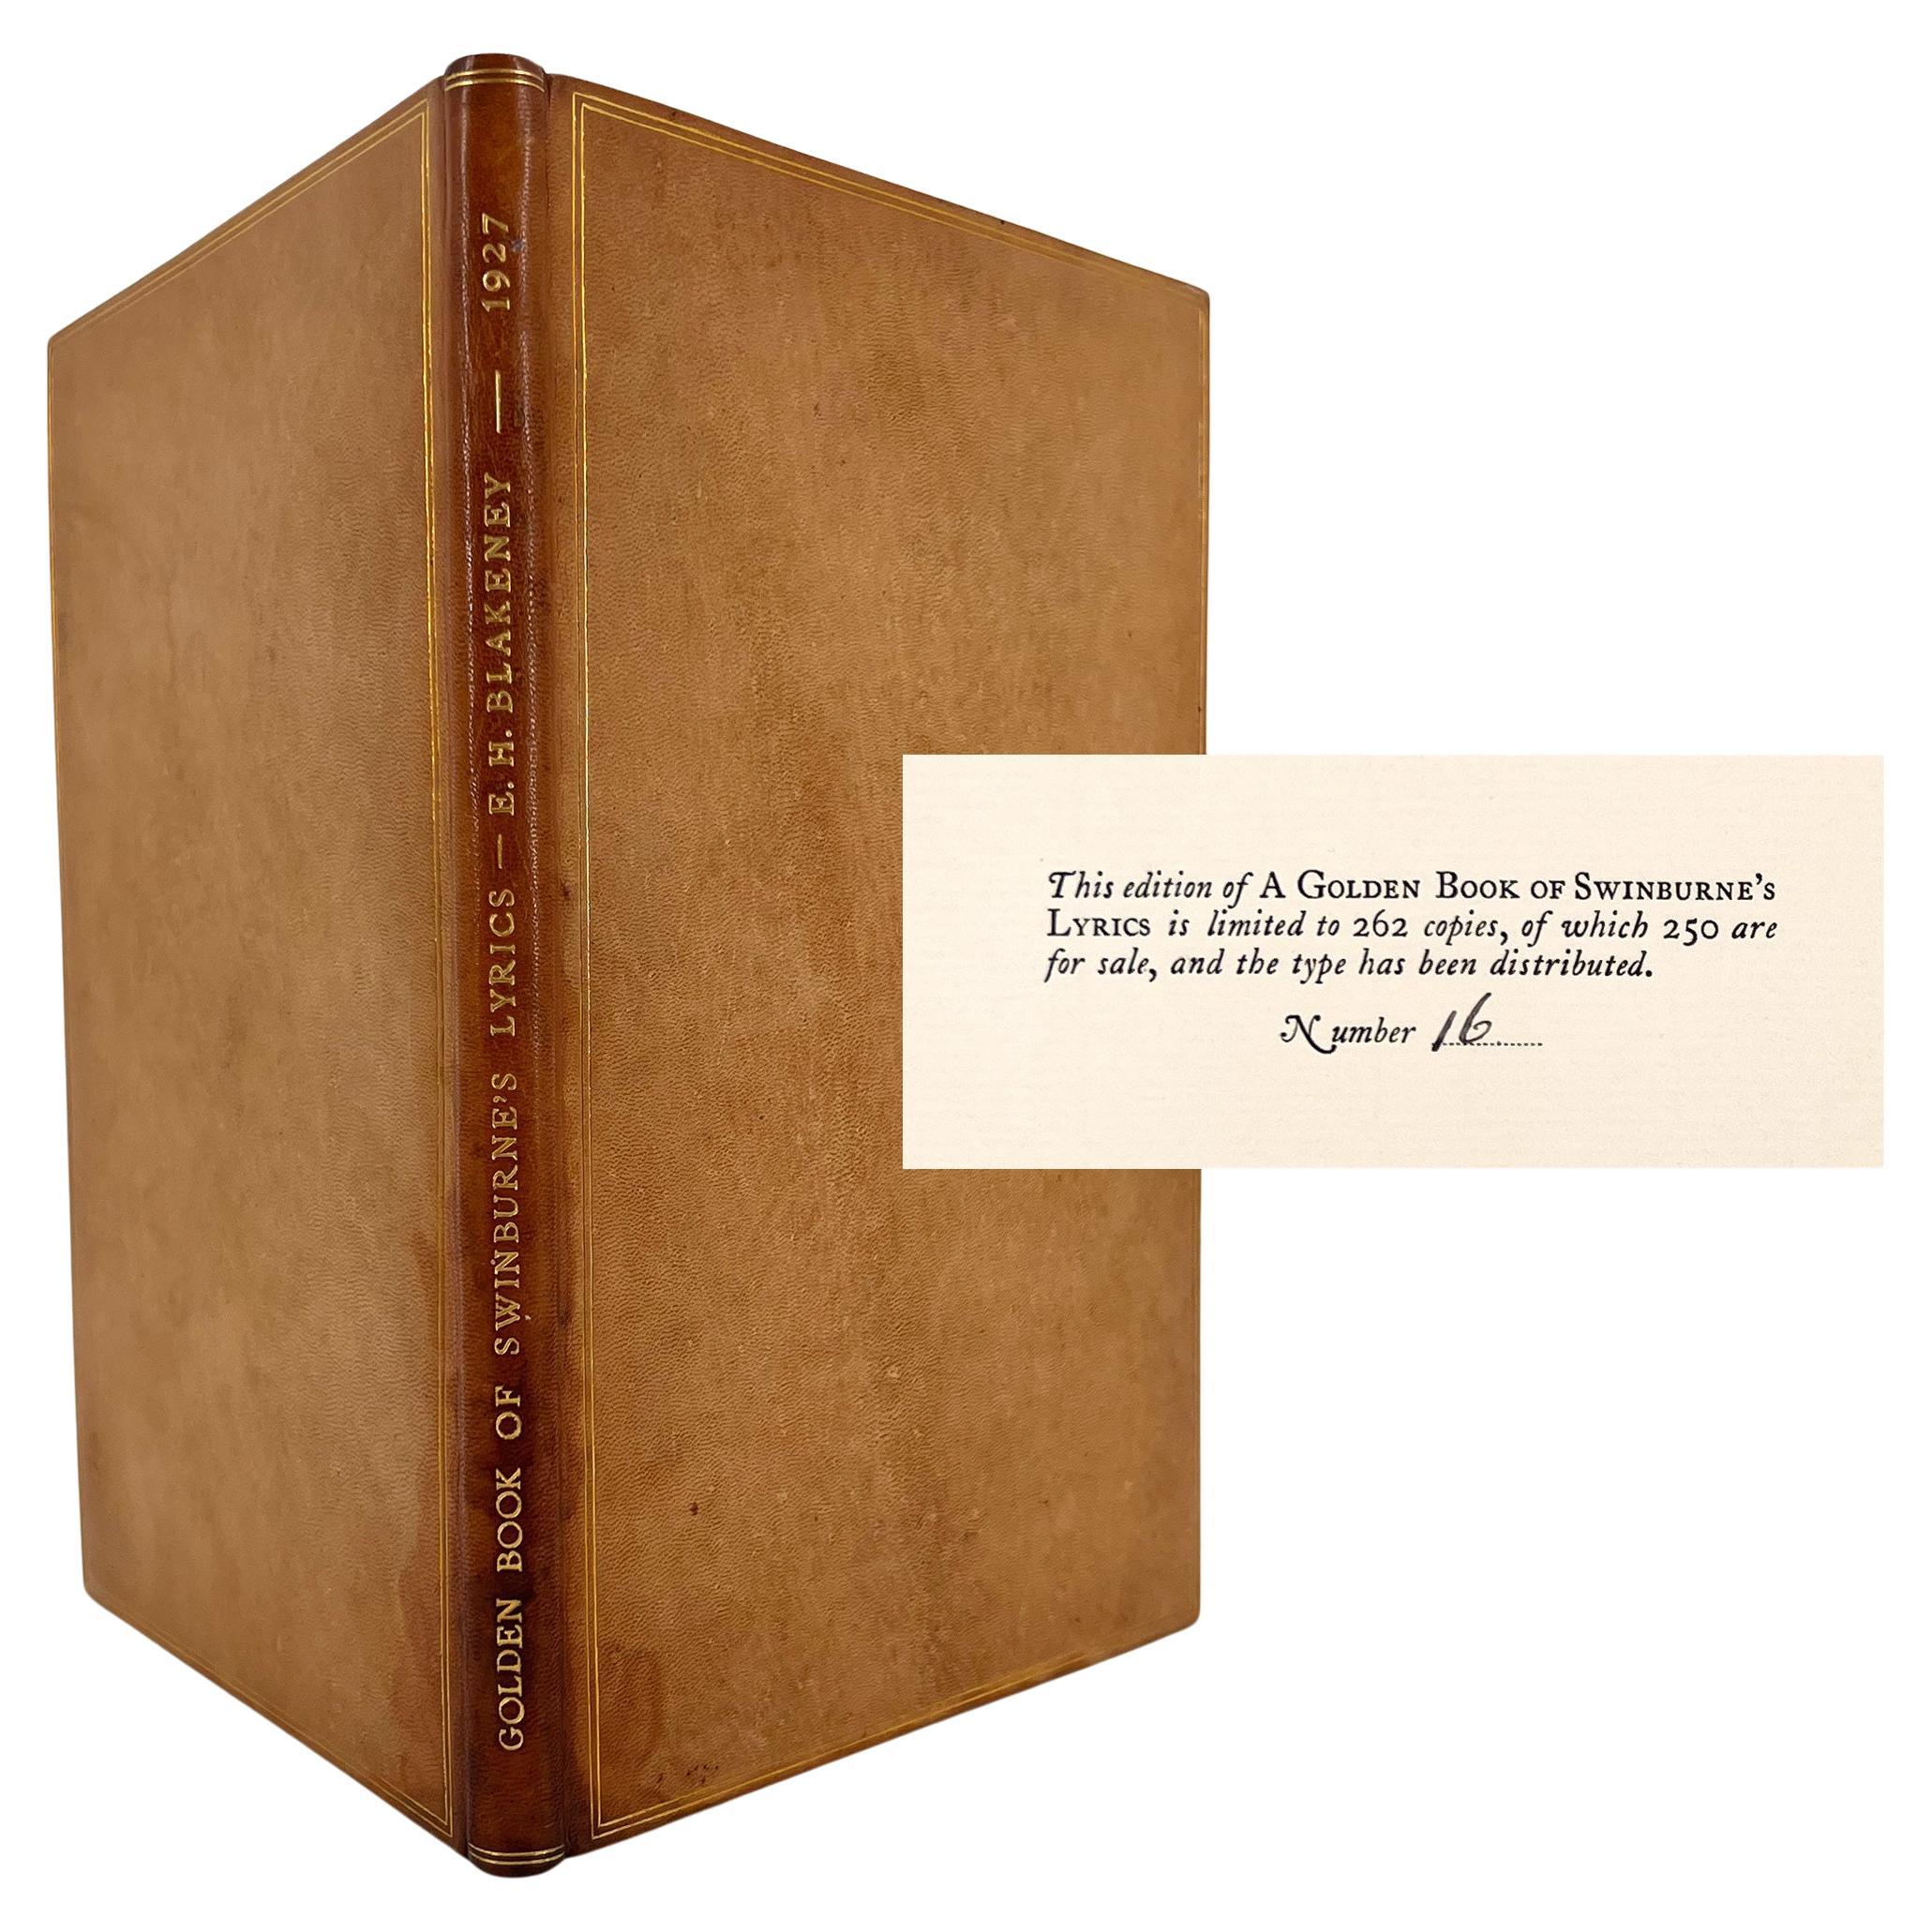 The Golden Book of Swinburne's Lyrics (Le livre d'or des paroles de Swinburne)